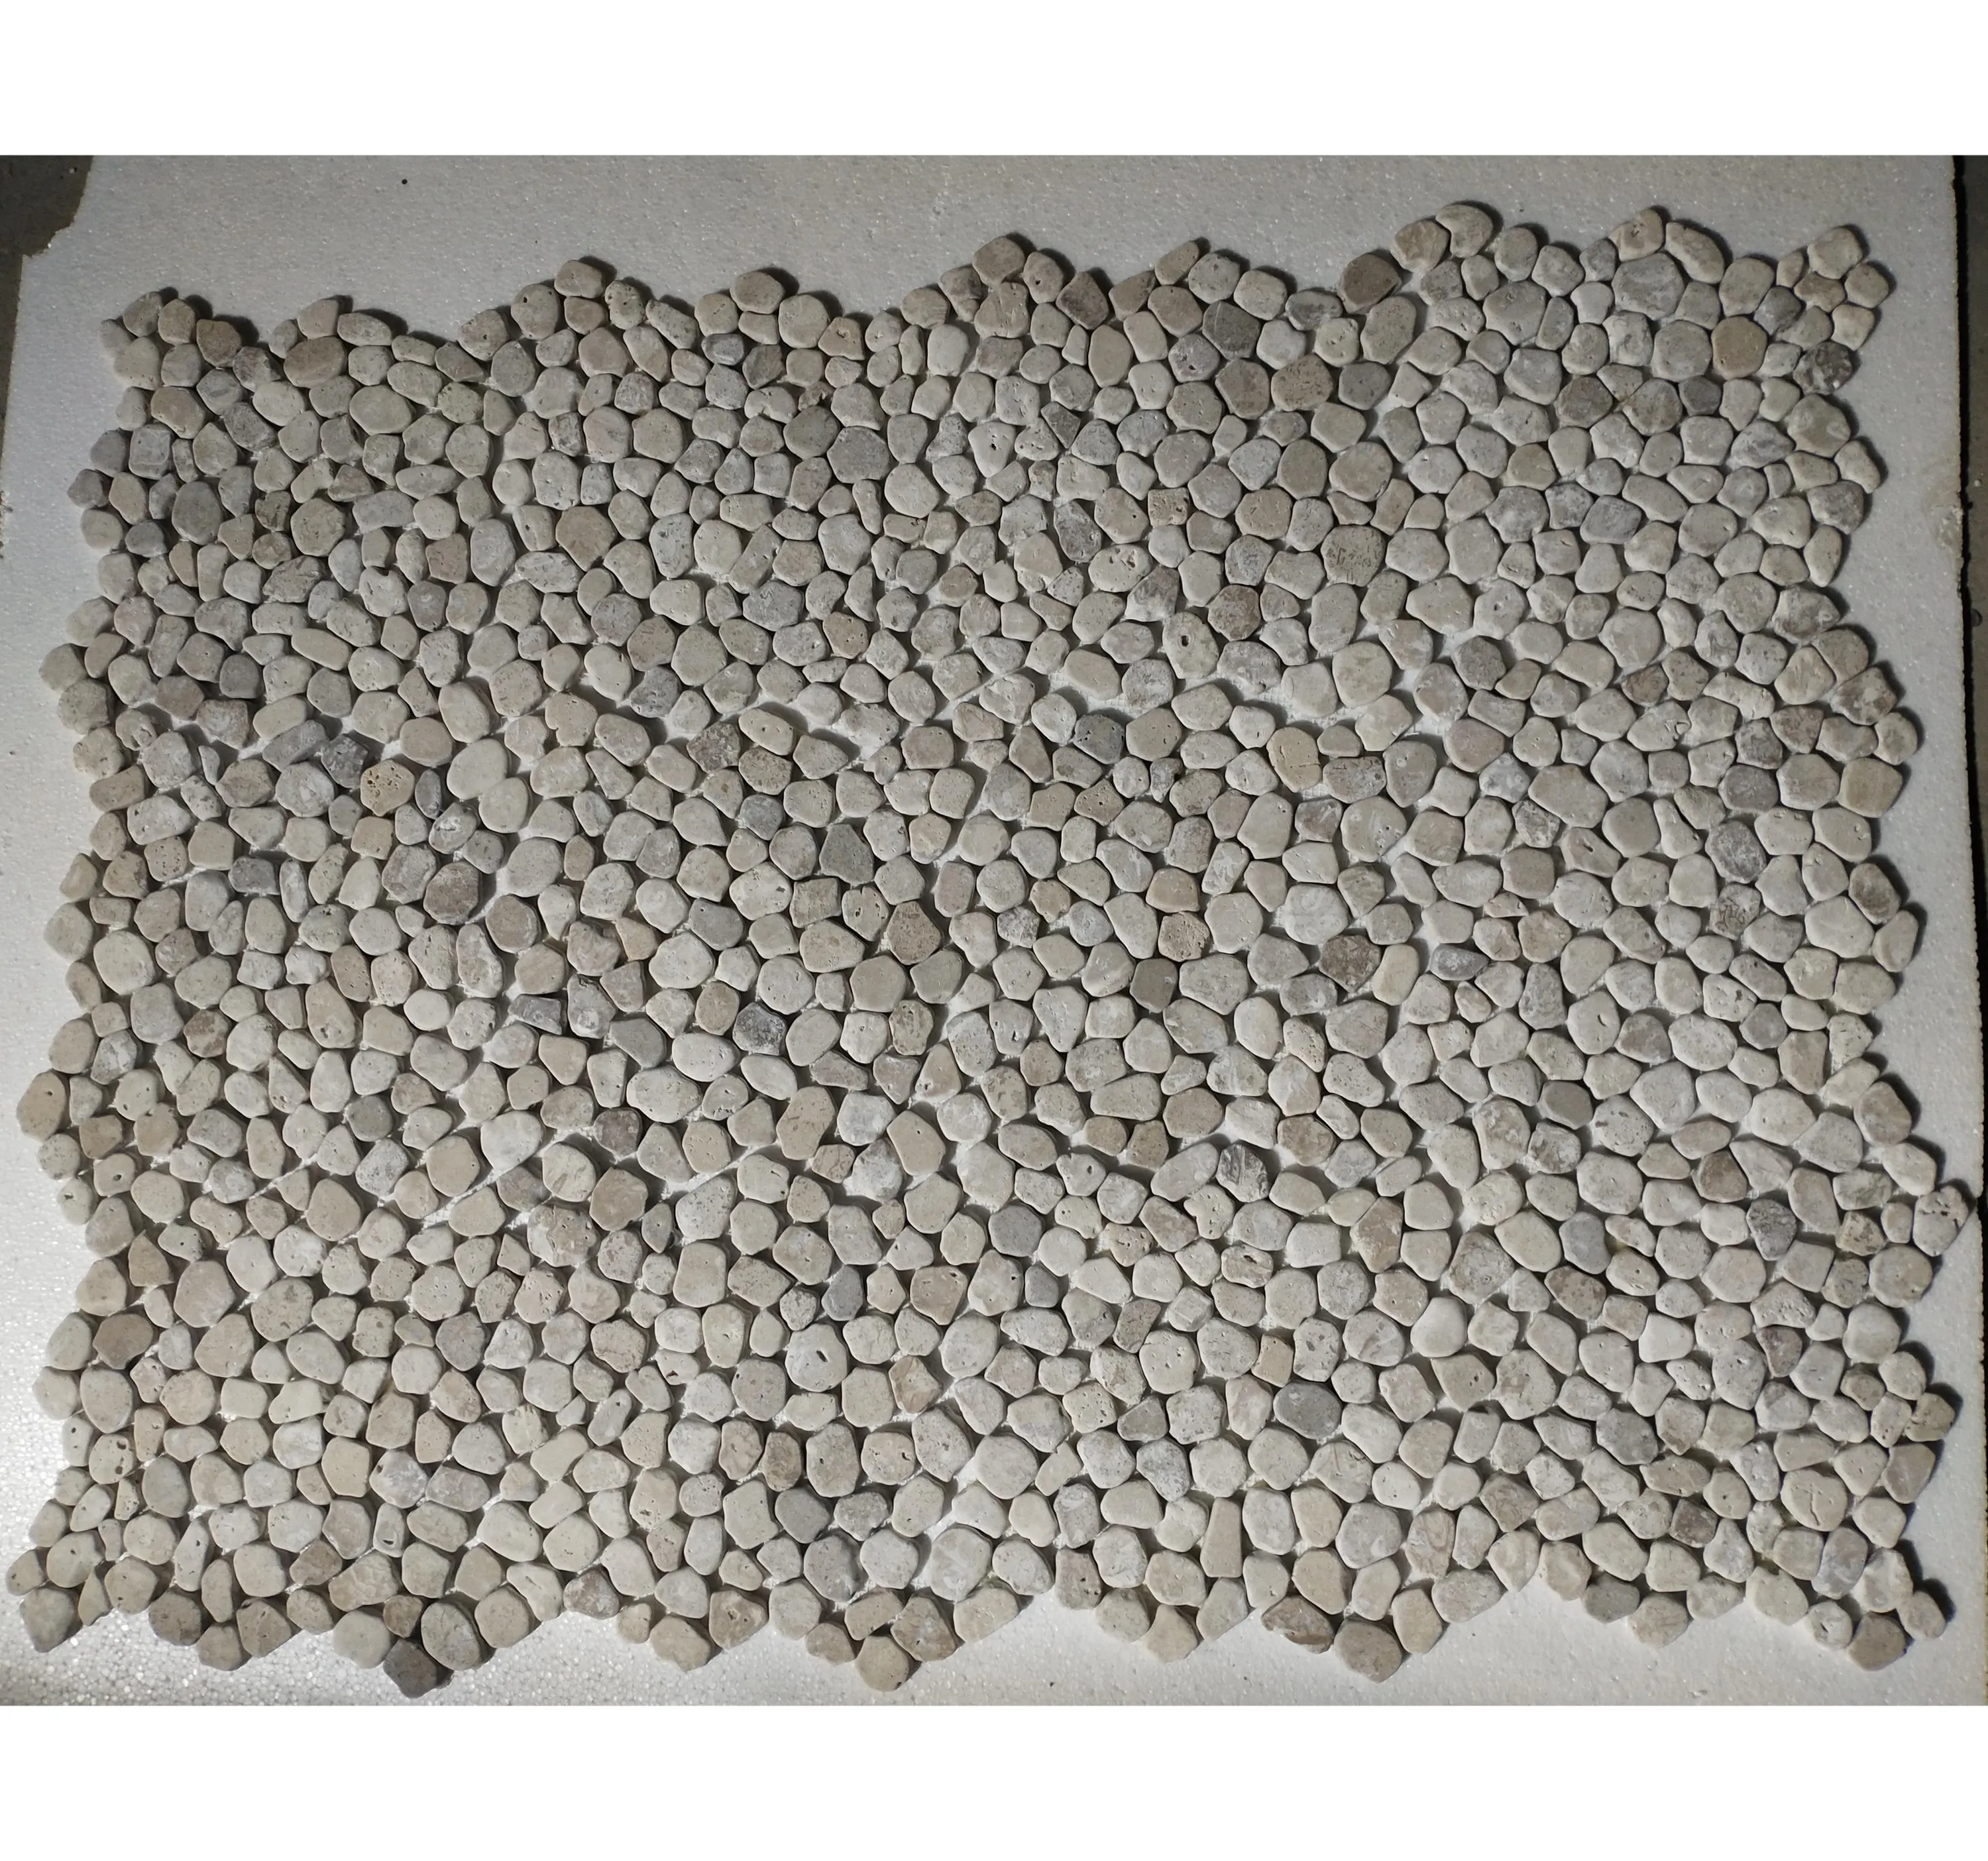 SHIHUI Modernes natürliches Retro-Kieselstein mosaik Unregelmäßiges Mosaik Polierte Fliesen Zertrümmertes gebrochenes Stein mosaik für die Inneneinrichtung